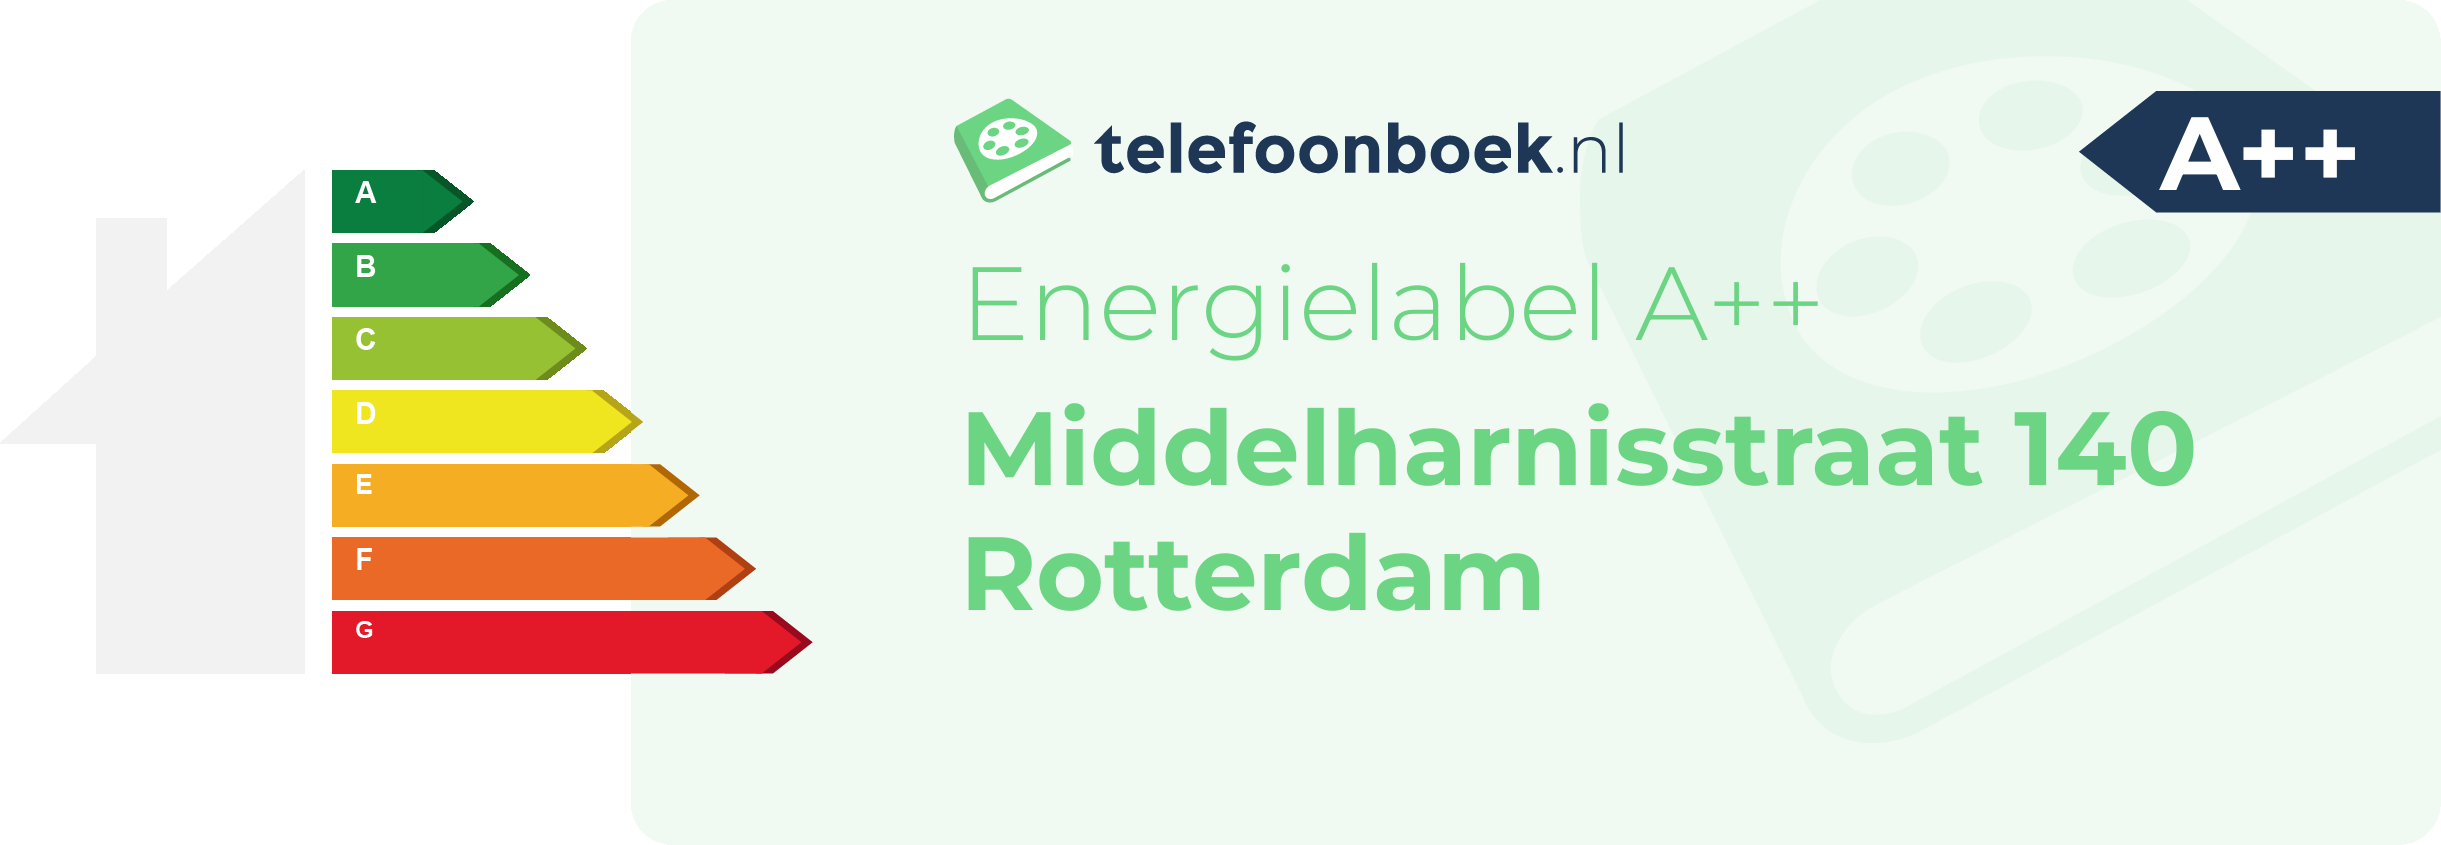 Energielabel Middelharnisstraat 140 Rotterdam